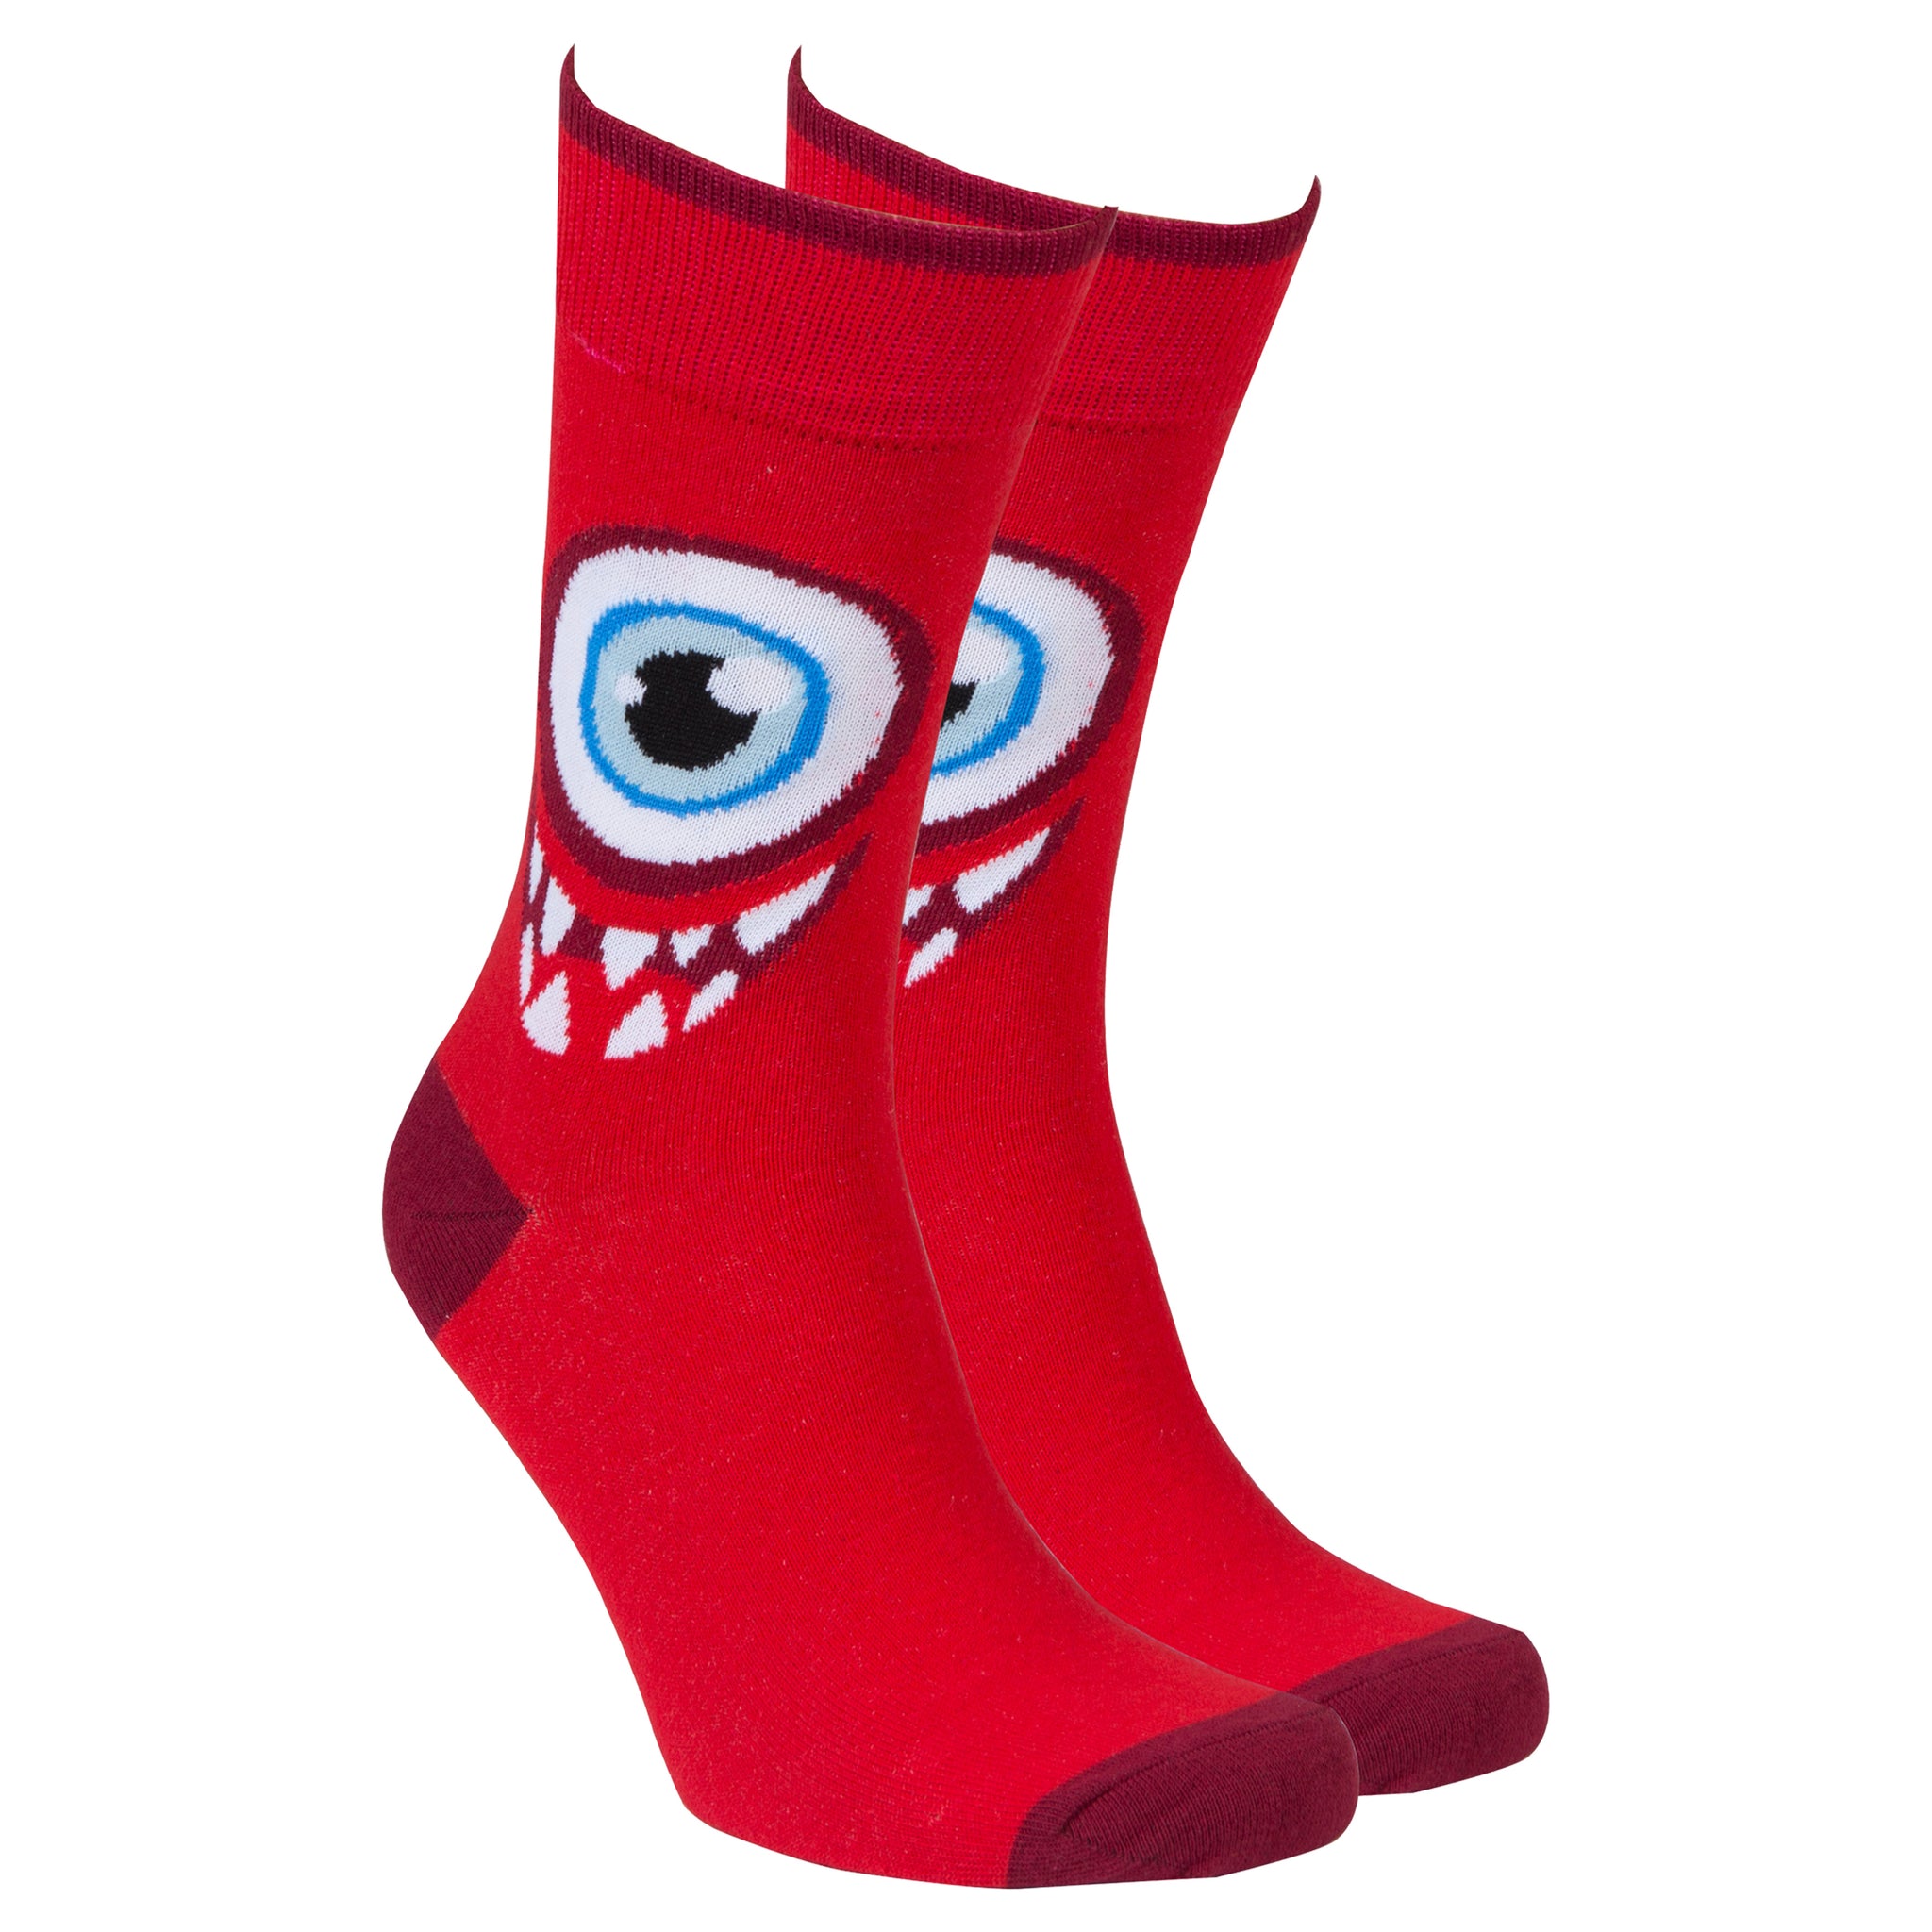 Men's One Eye Monster Socks